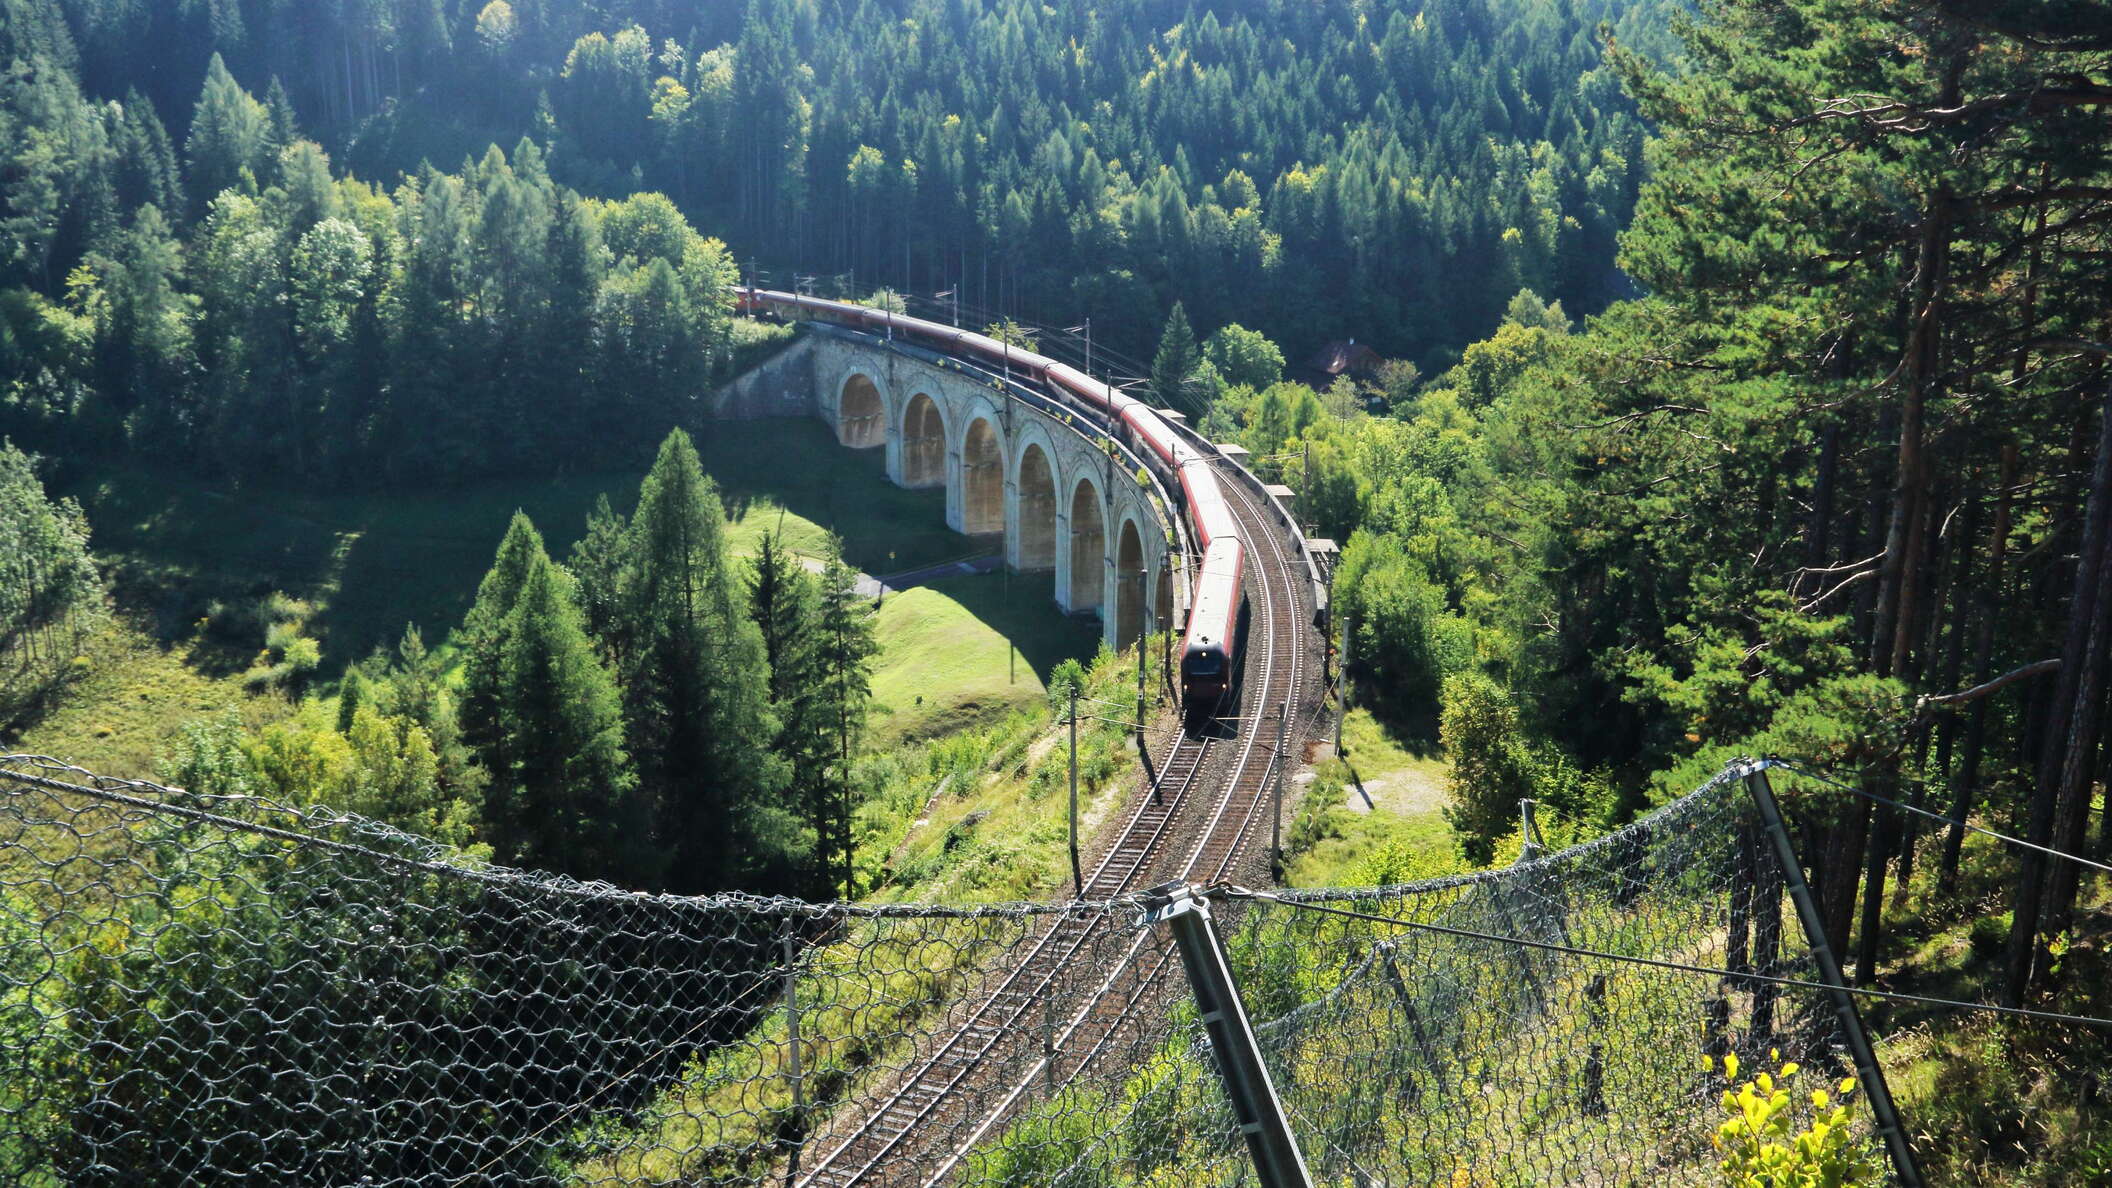 Semmering Railway | Fleischmann Bridge